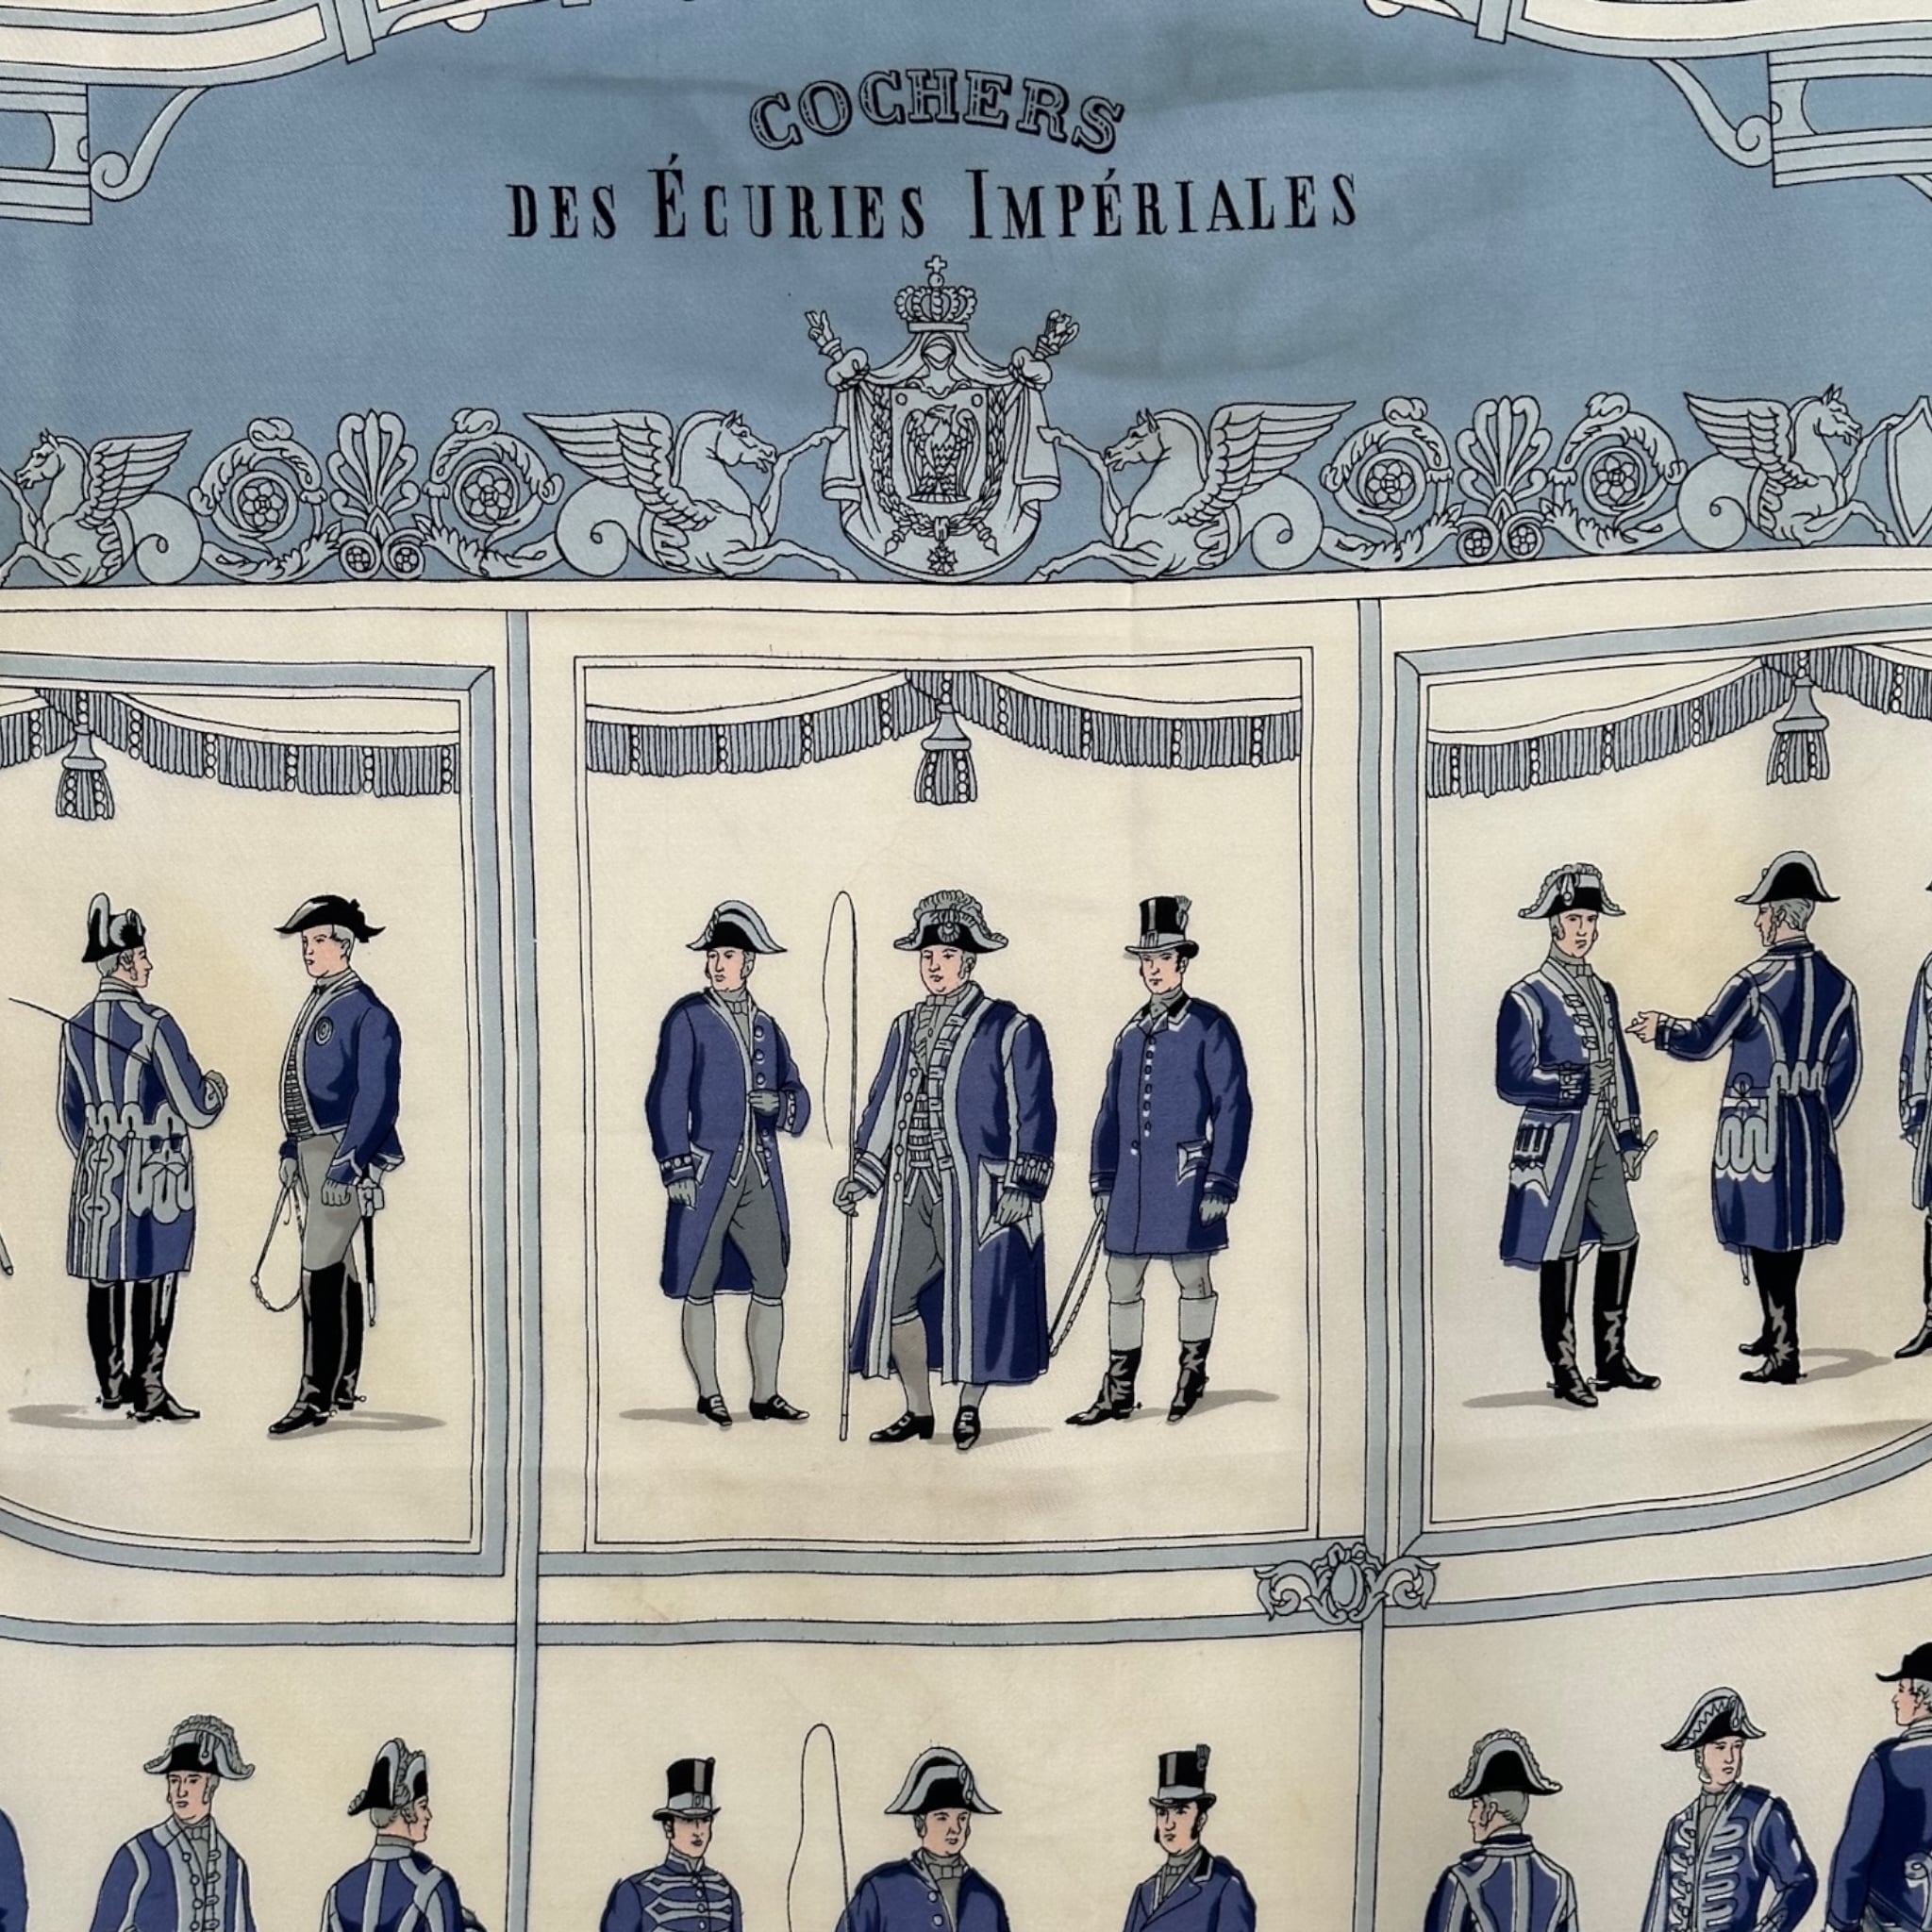 foulard-hermes-cochers-des-ecuries-imperiales-titre-grande-livree-a-la-francaise